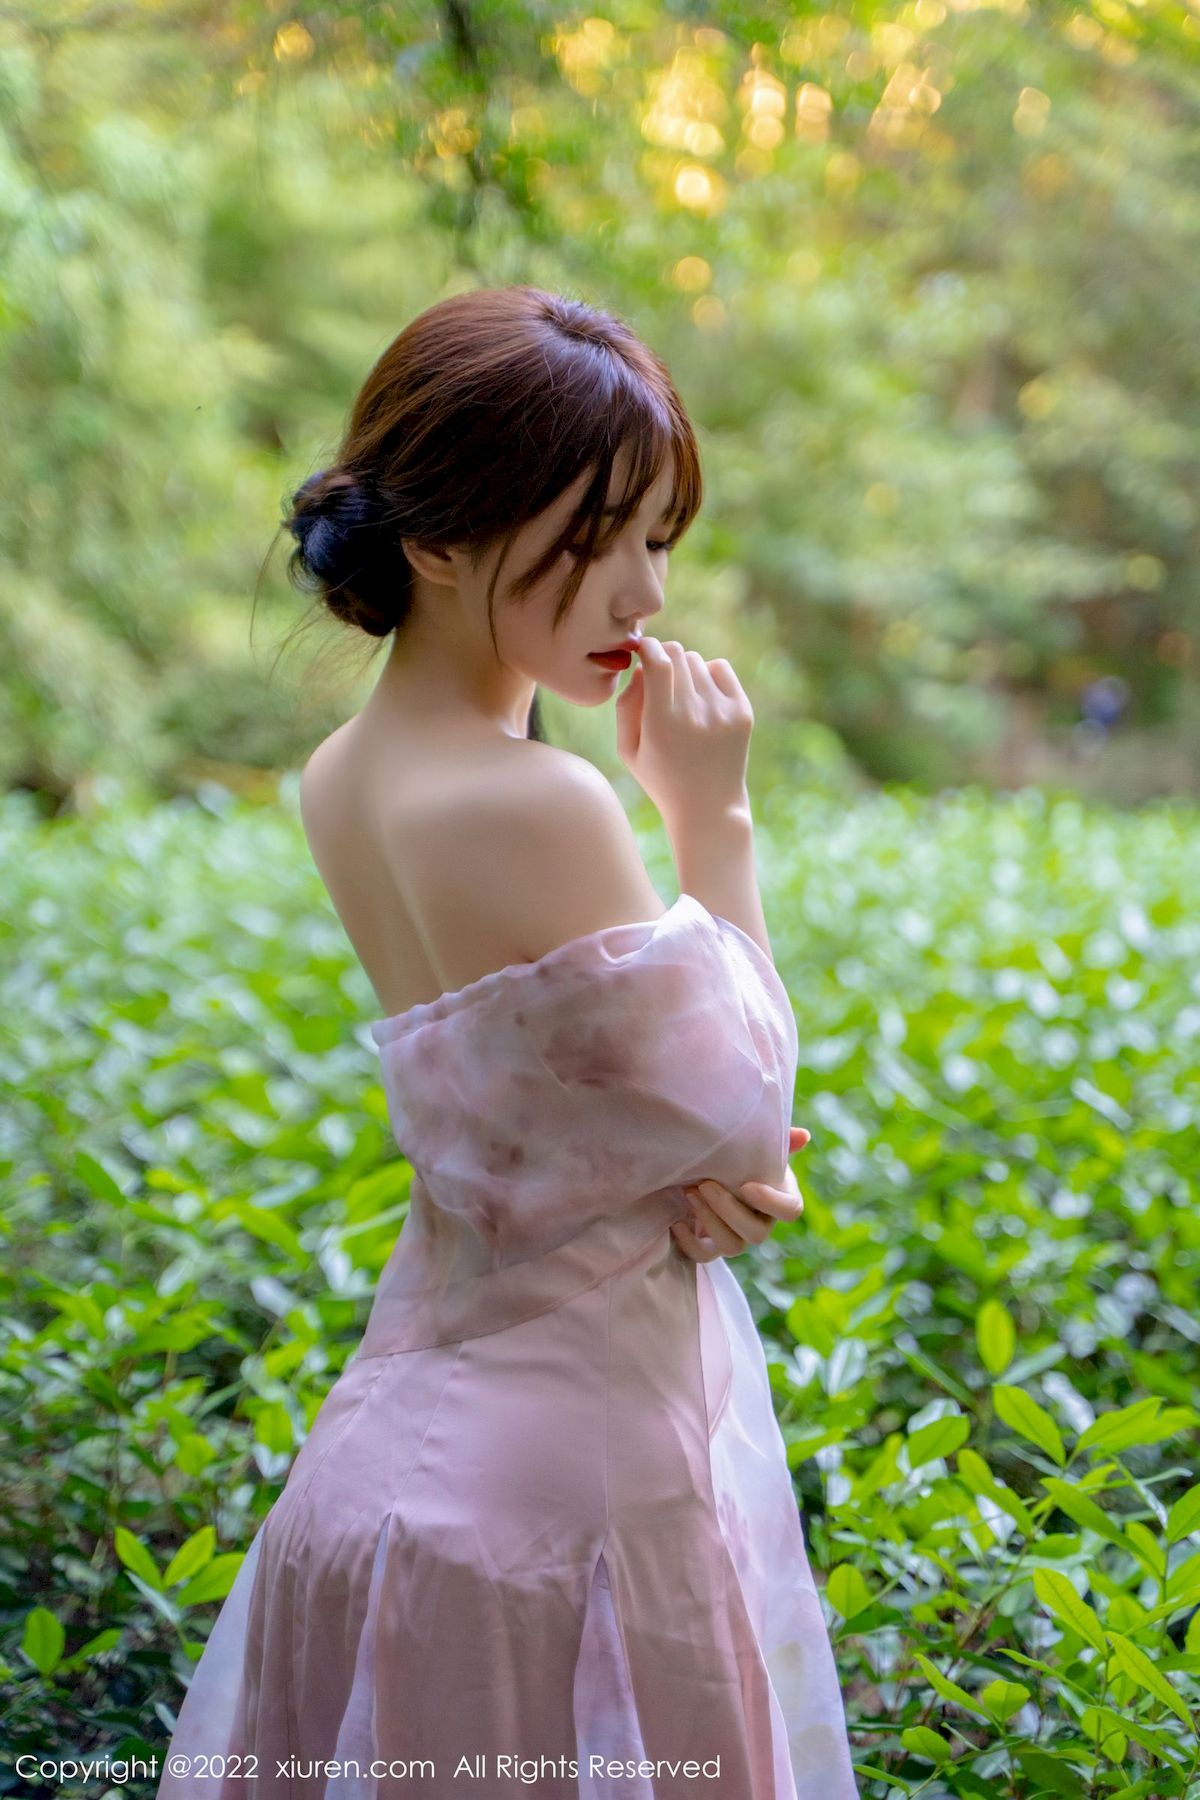 婠婠么&小肥莹淡紫色吊带长裙户外拍摄